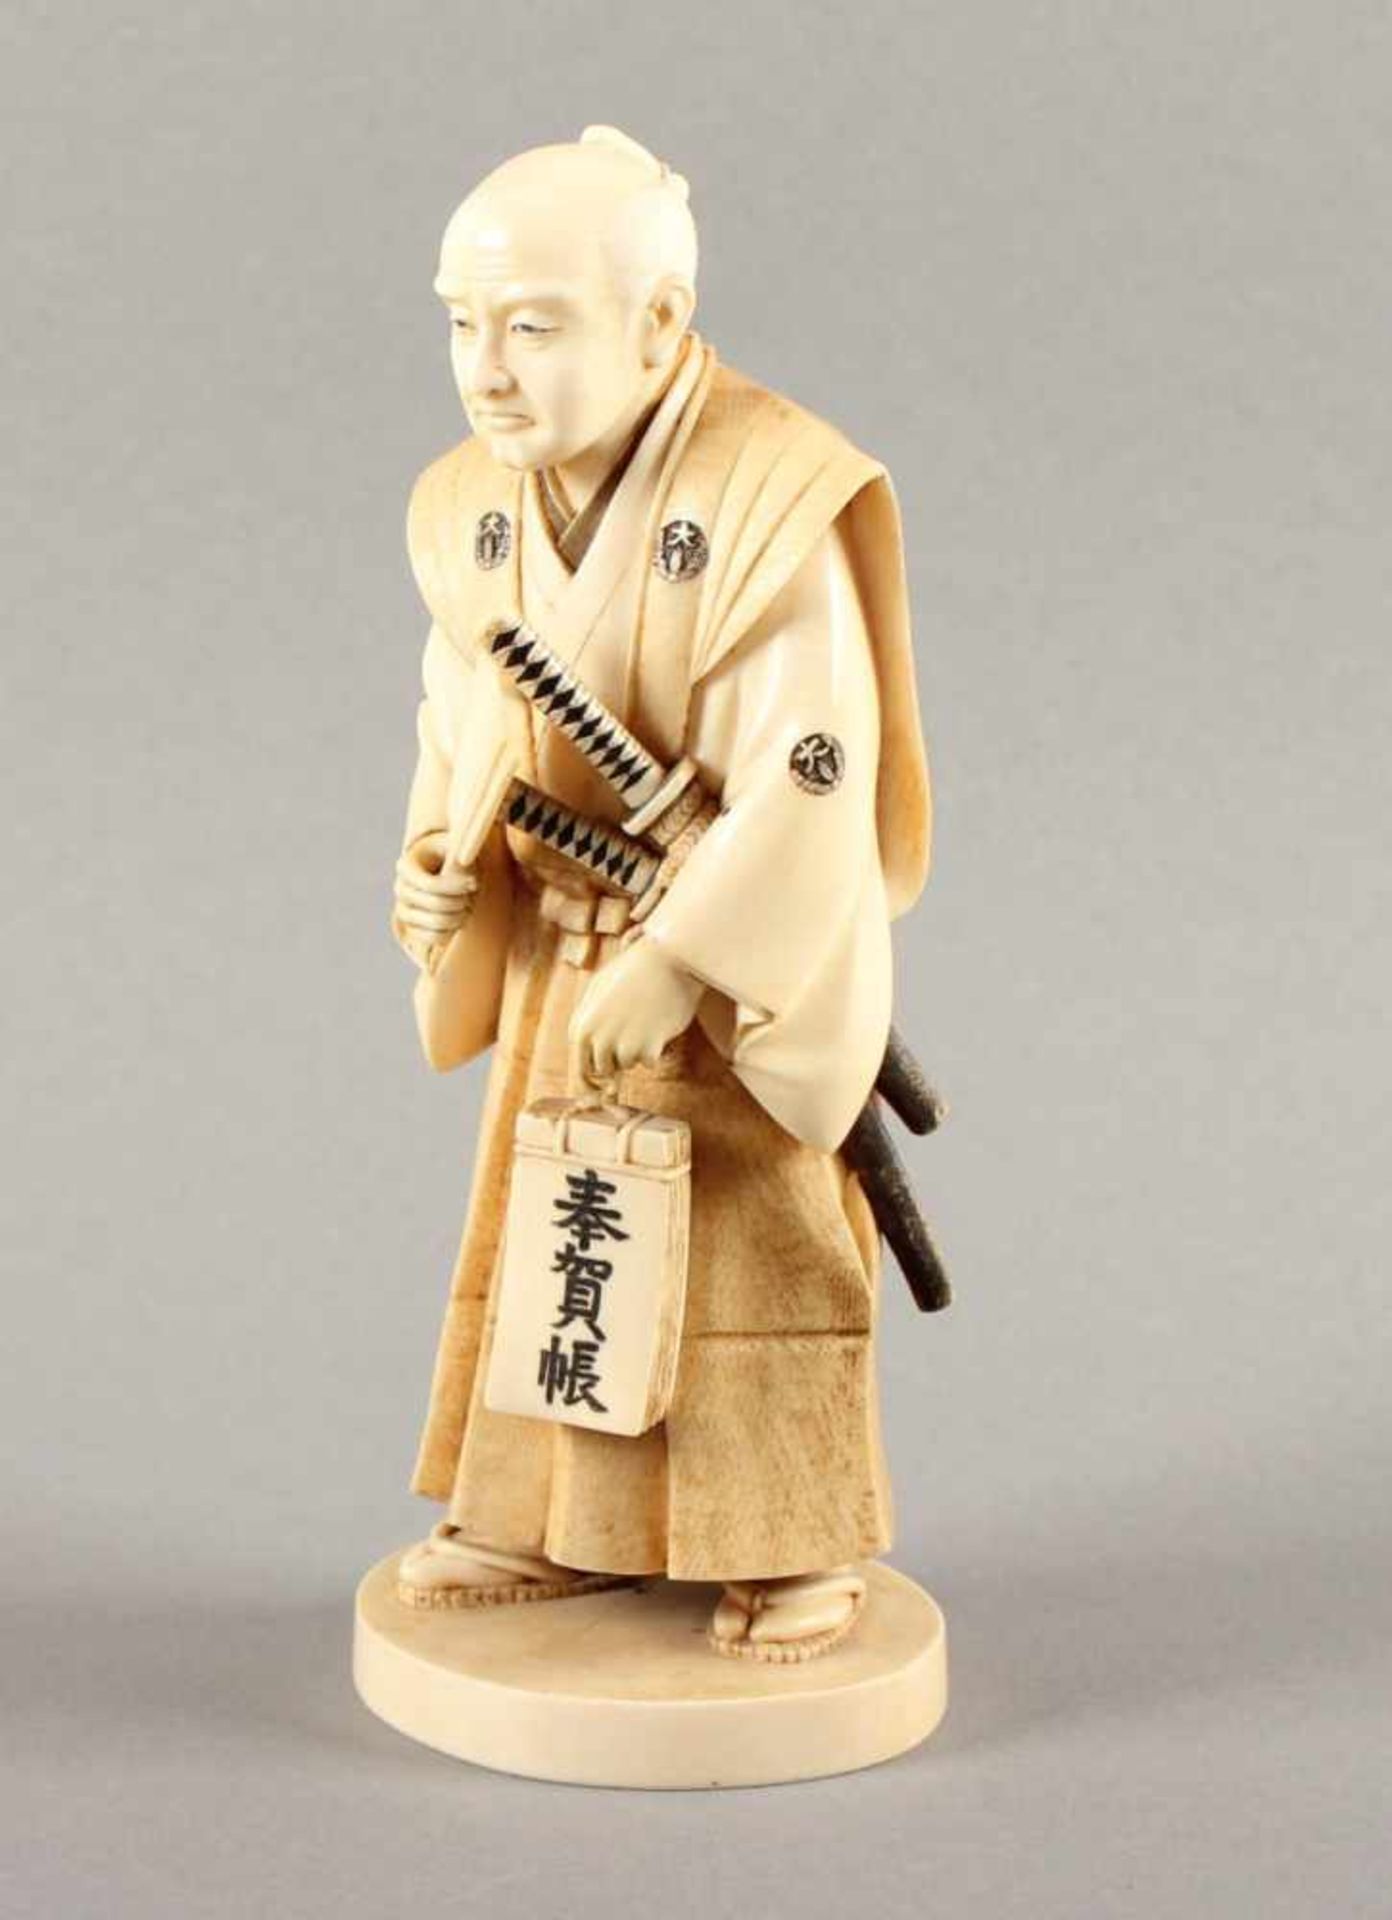 GROSSES OKIMONO "SAMURAI", Elfenbein, sehr fein geschnitzt, auf einer runden Sockelplatte steht - Bild 2 aus 6